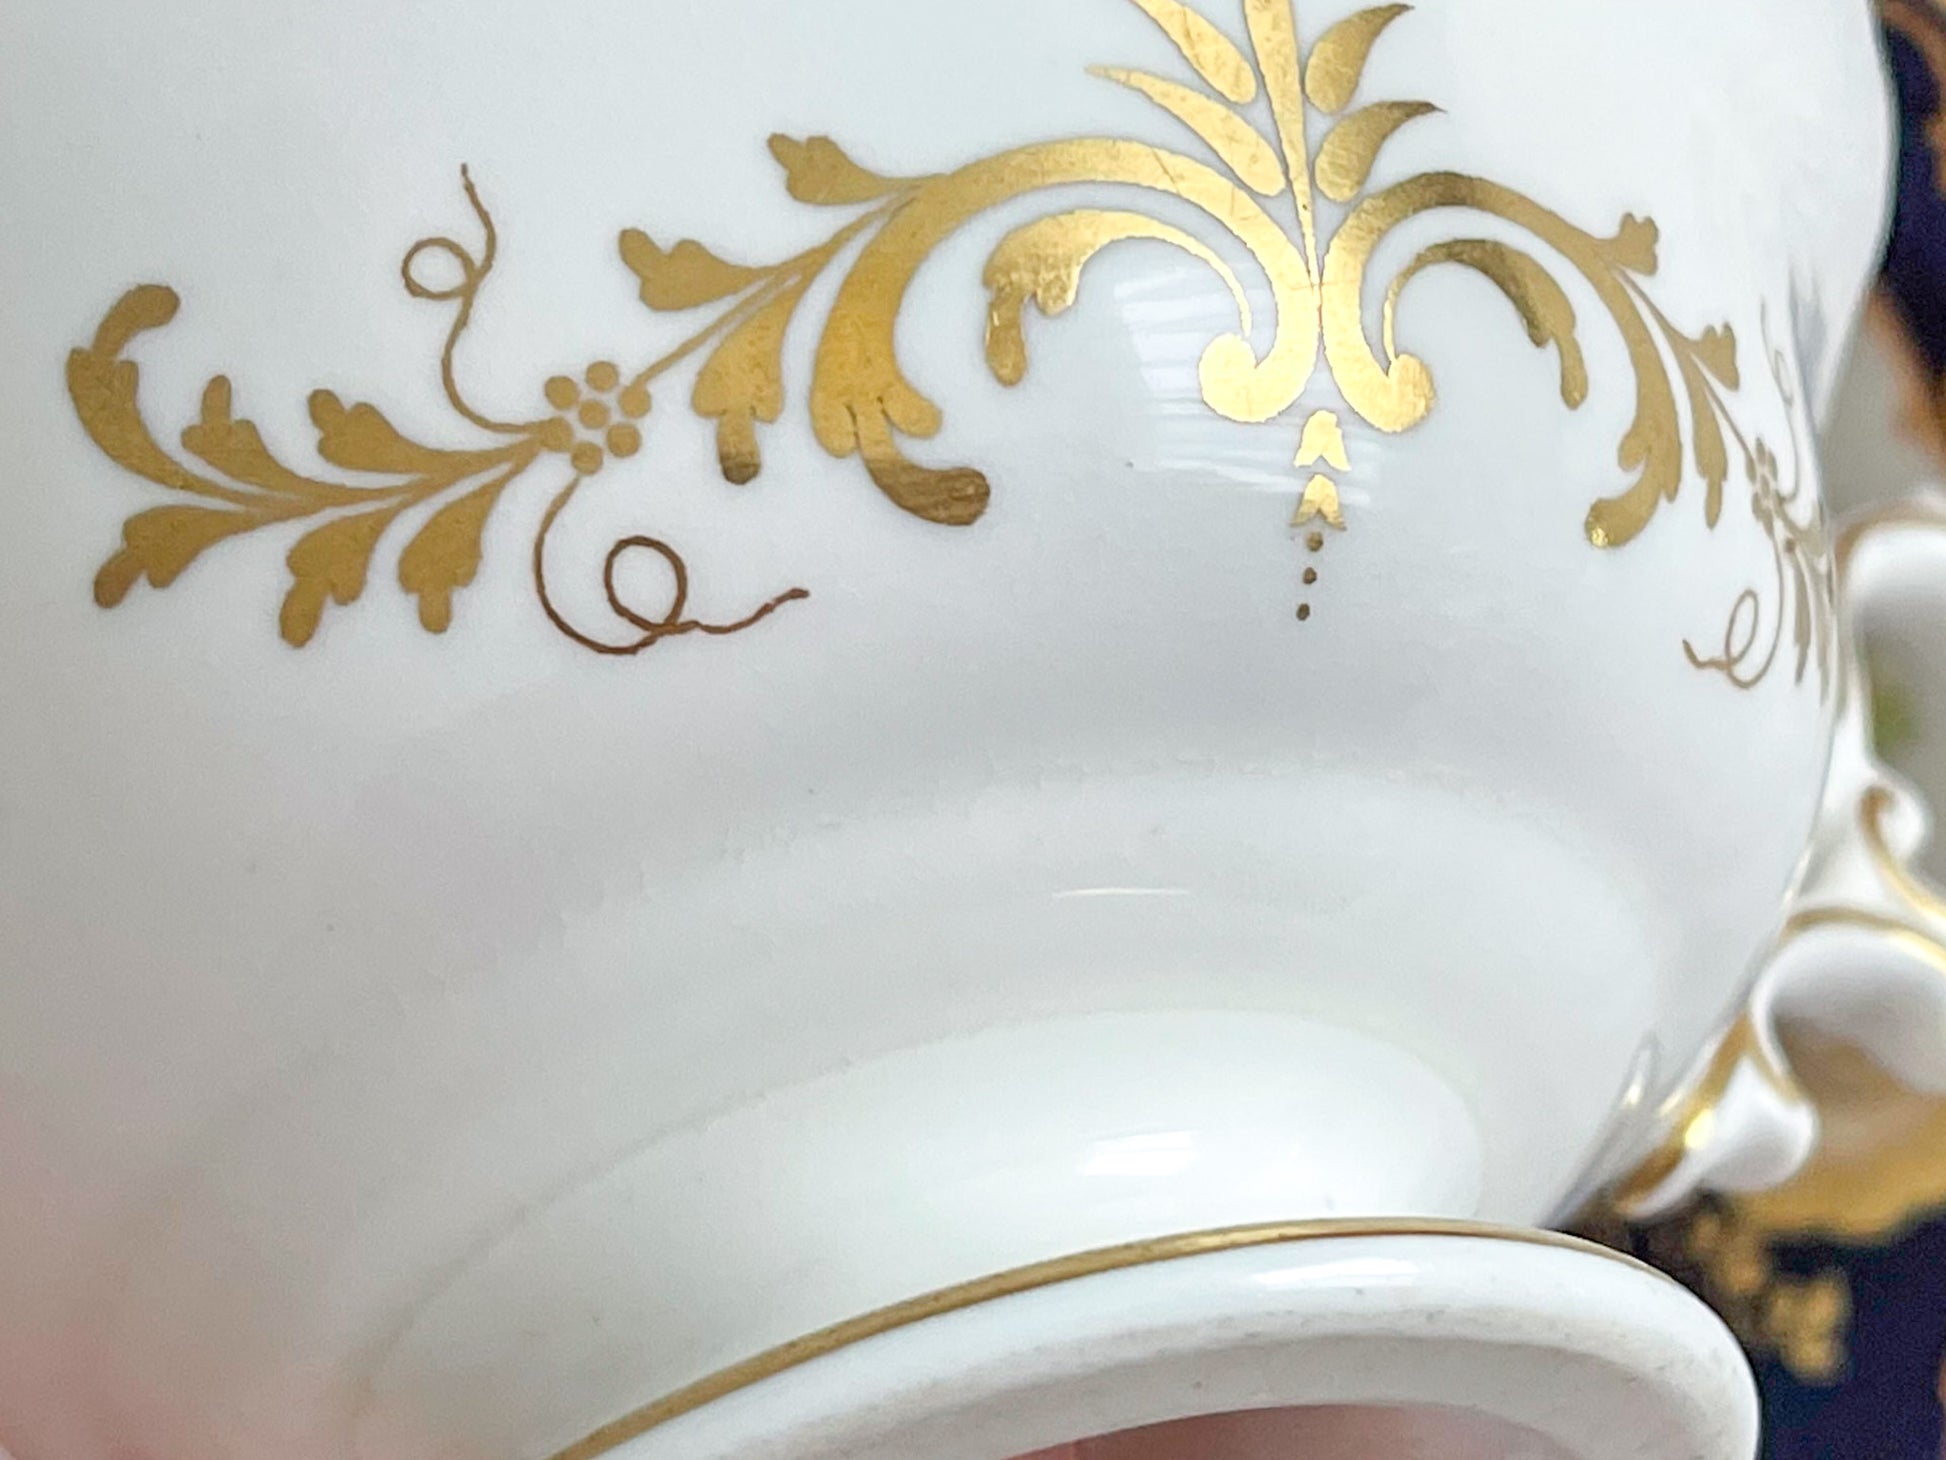 ミントンQシェイプハンドル、コバルトブルーのカップ&ソーサー。ハンドペイントで描かれた金彩と花々が美しいです、Rose Antiquesはコールポートをはじめ英国アンティーク磁器をご紹介しています。